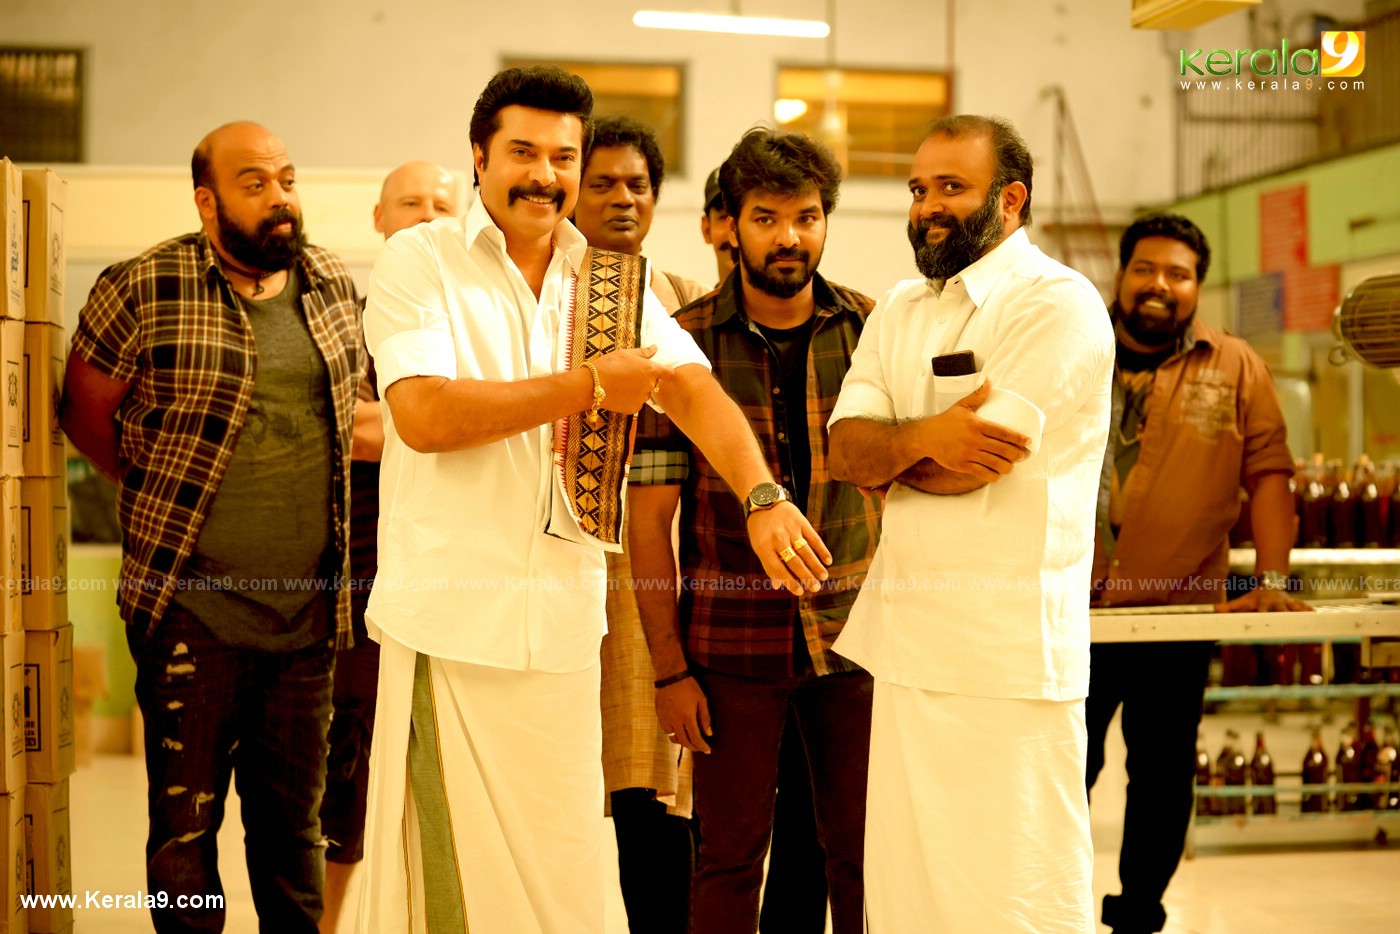 madura raja movie stills 22 - Kerala9.com